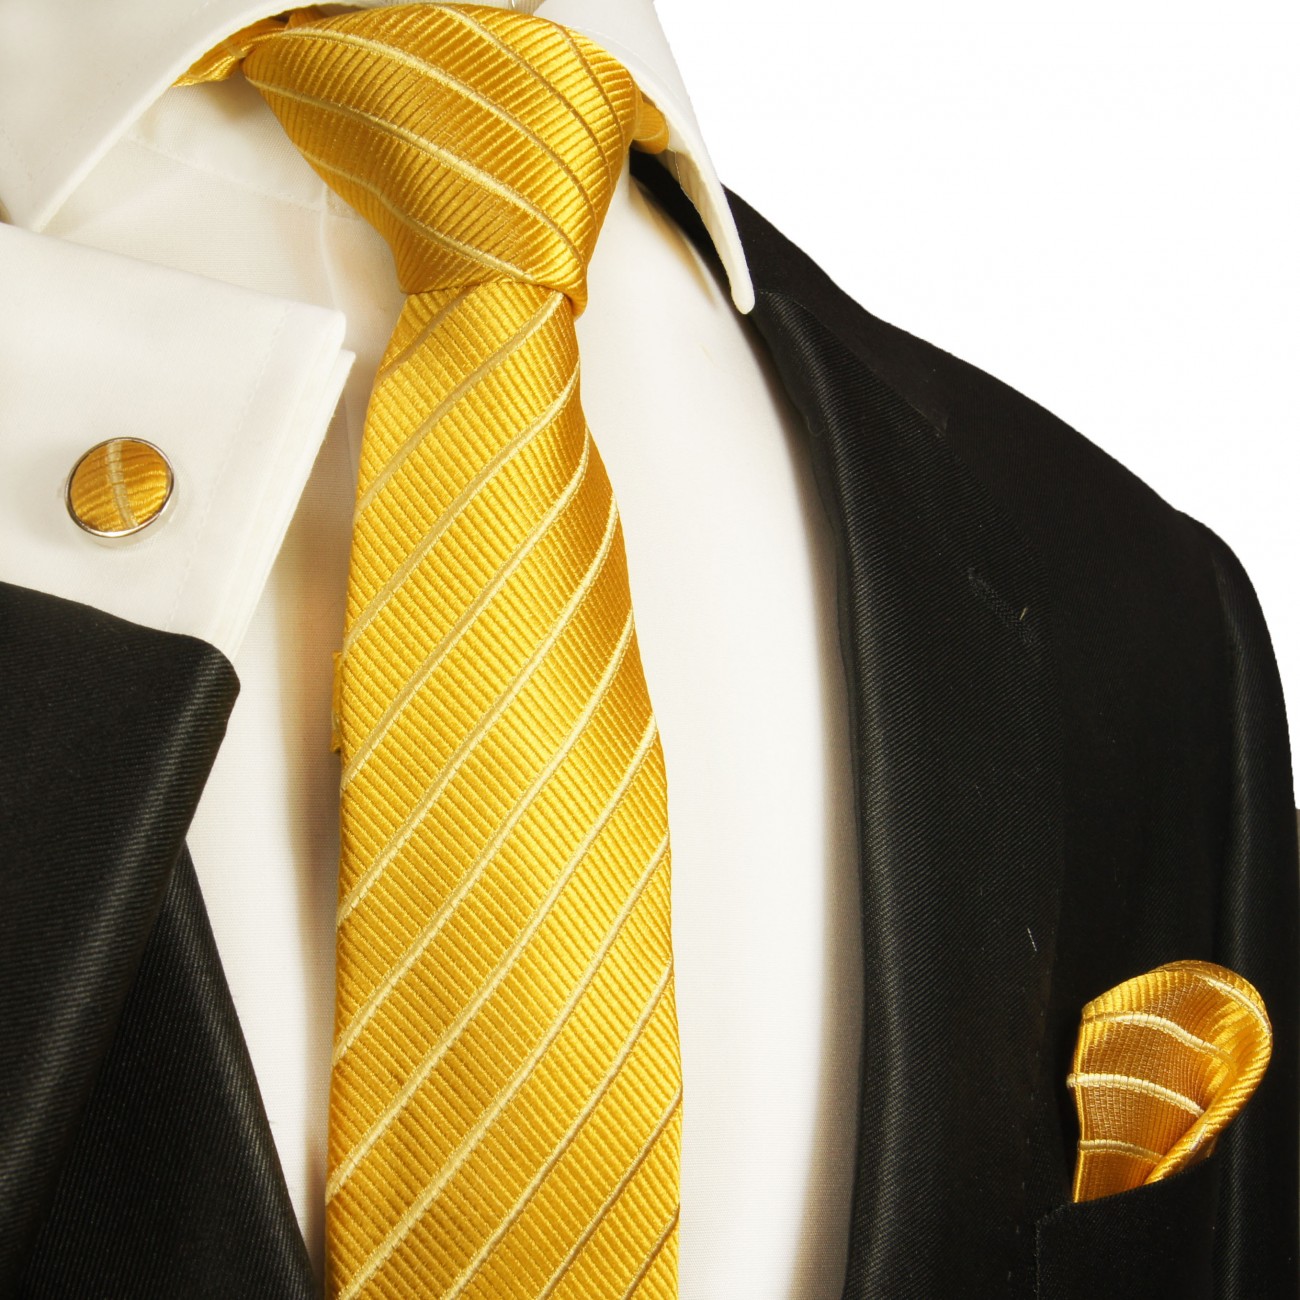 Krawatte gold schmal mit Einstecktuch und Manschettenknöpfe